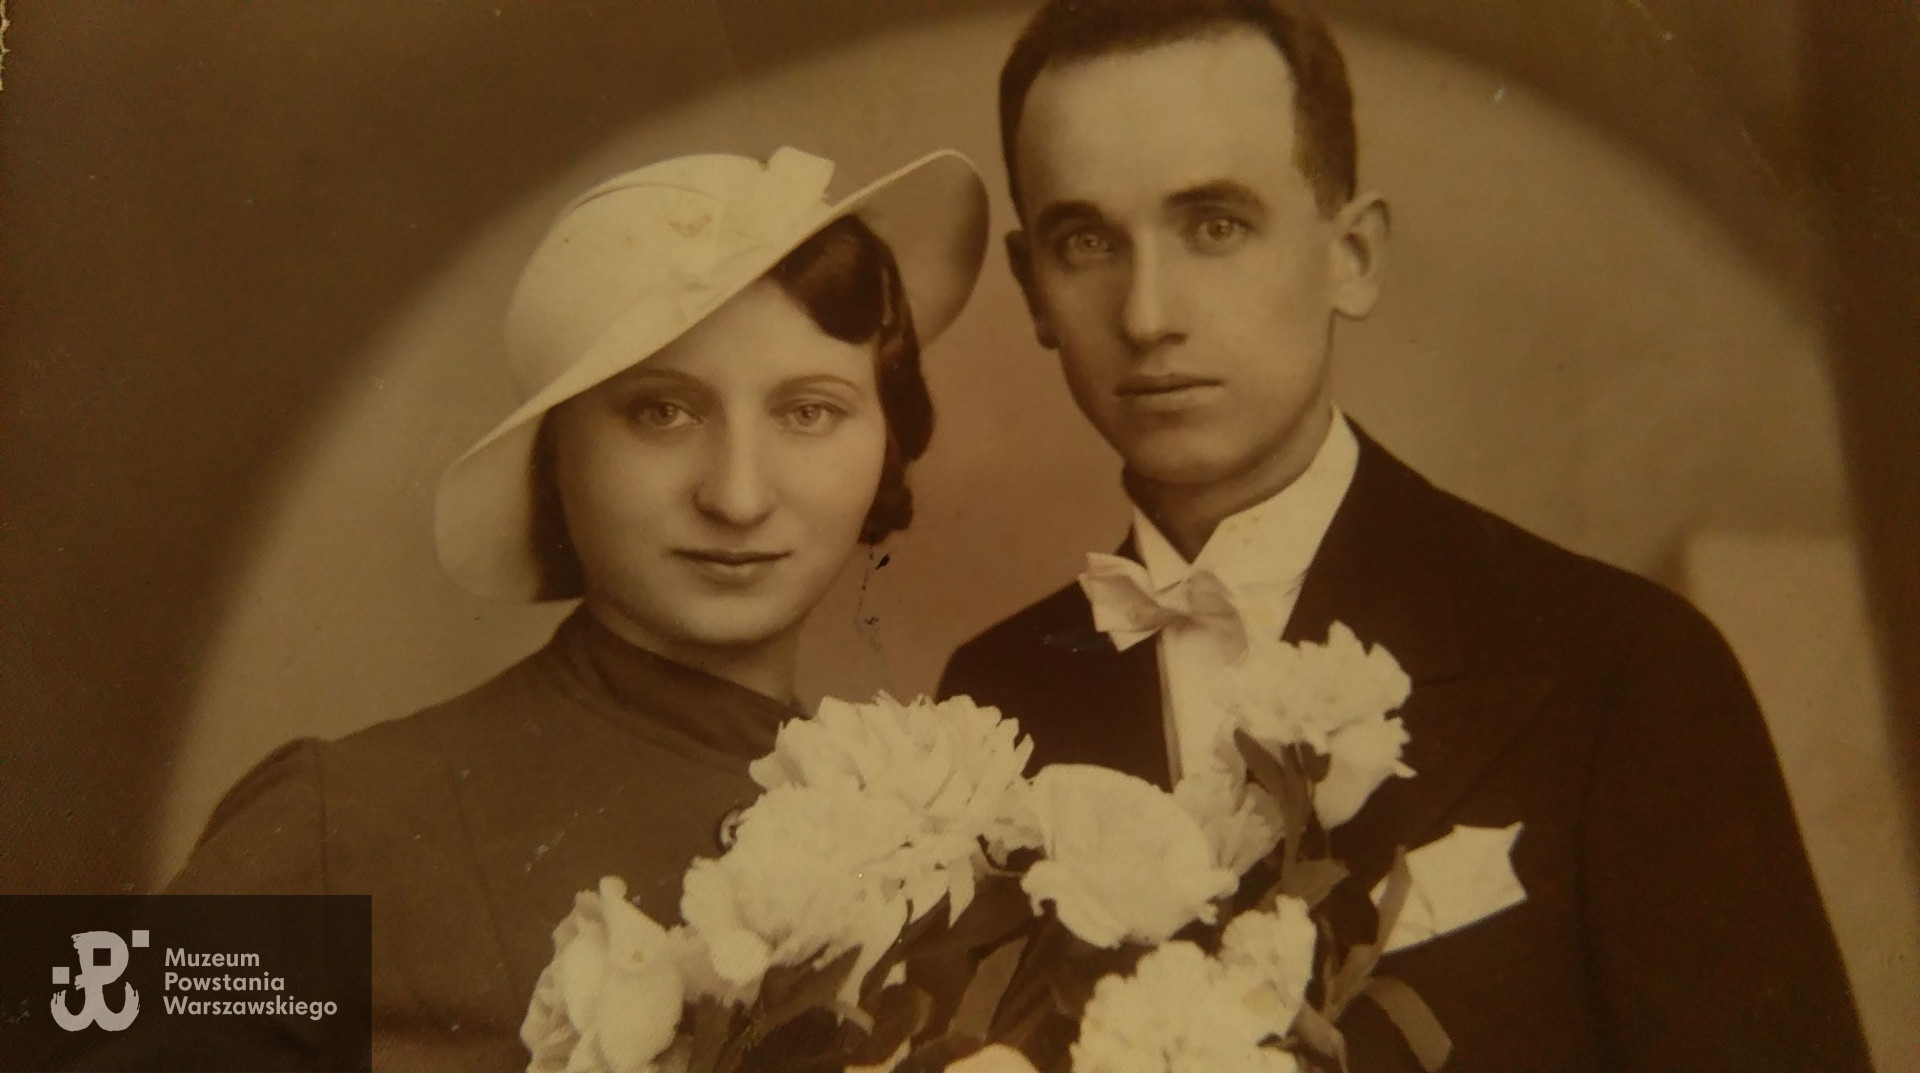 Zdjęcie ślubne Stanisława i Marii, udostępniła Pani Elżbieta Budziak-Laskowska